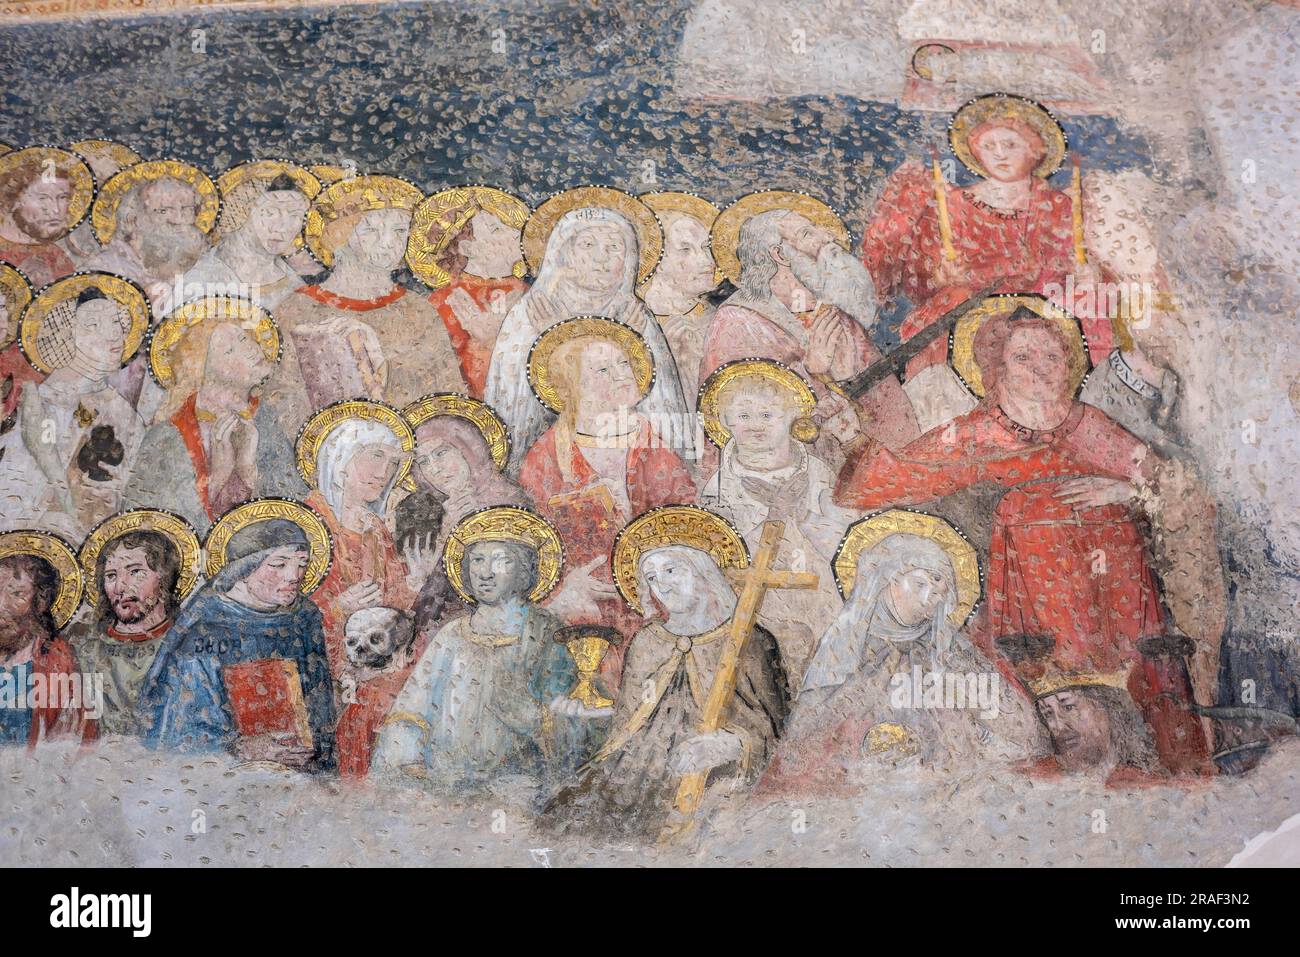 Fresque médiévale, vue d'une section d'une fresque médiévale représentant une assemblée de saints le jour du jugement, Capilla San Bla, Cathédrale de Tolède, Espagne Banque D'Images